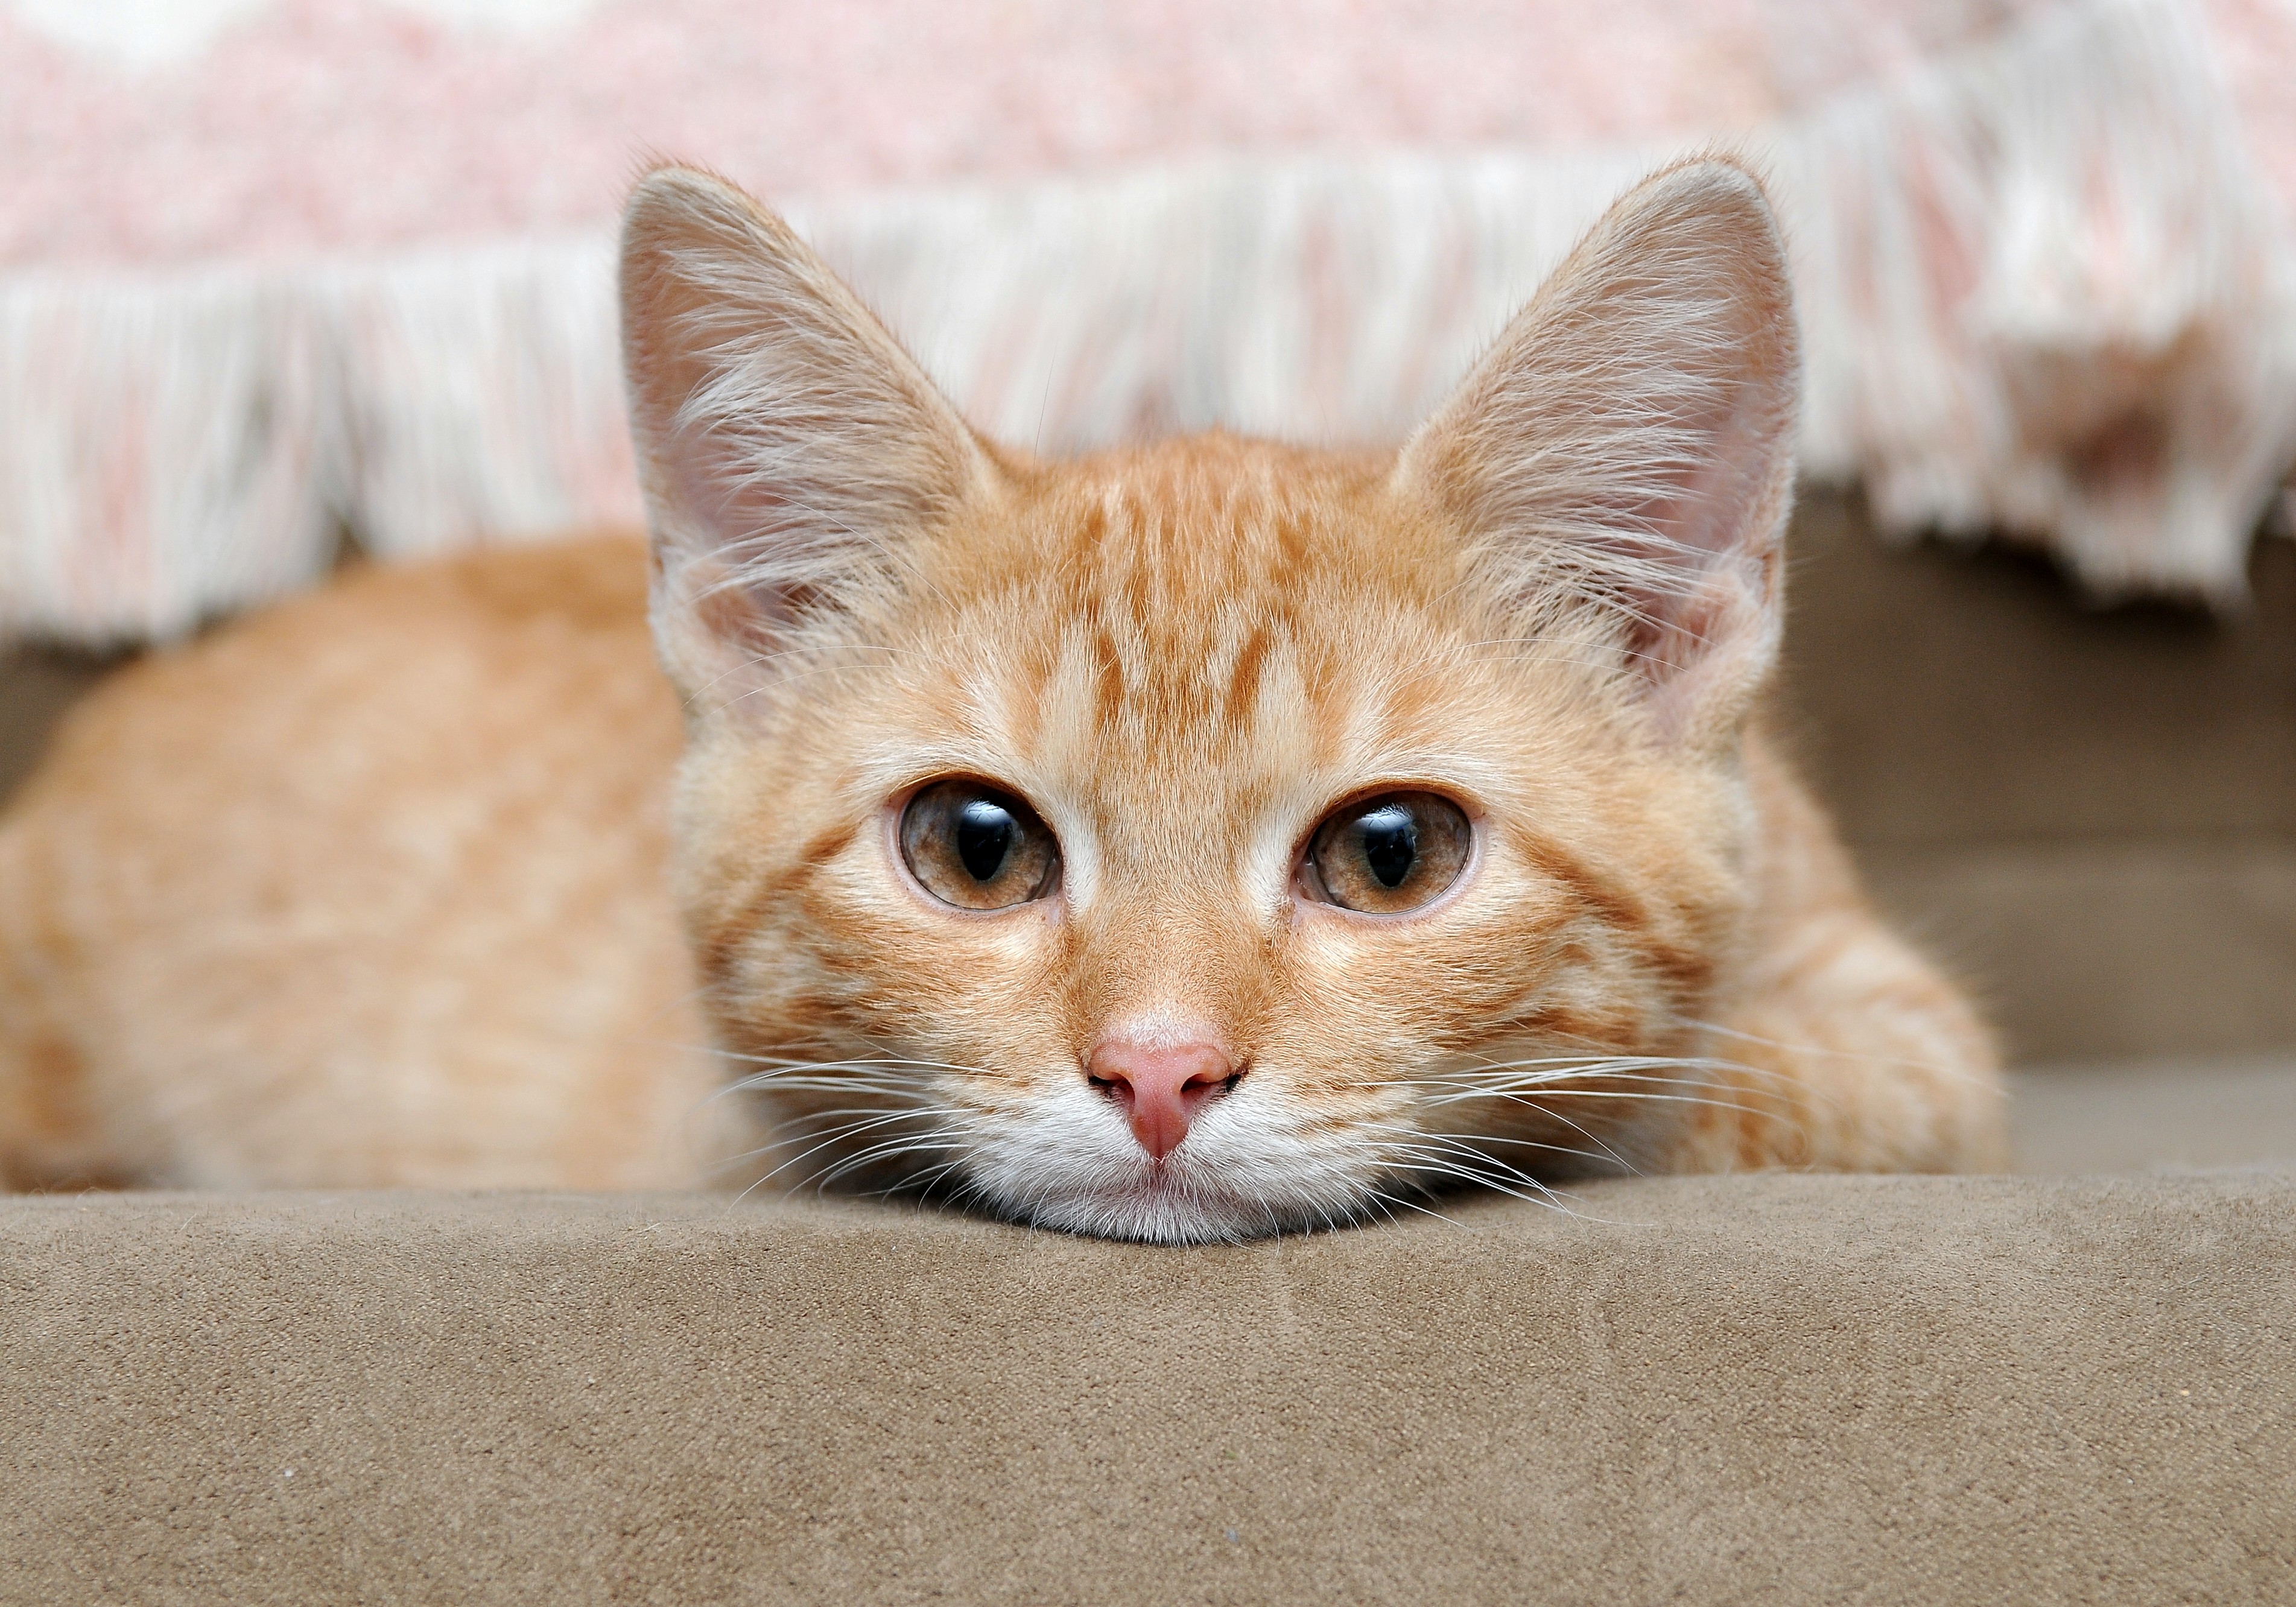 フリー画像 動物写真 哺乳類 ネコ科 猫 ネコ 子猫 チャトラ フリー素材 画像素材なら 無料 フリー写真素材のフリーフォト